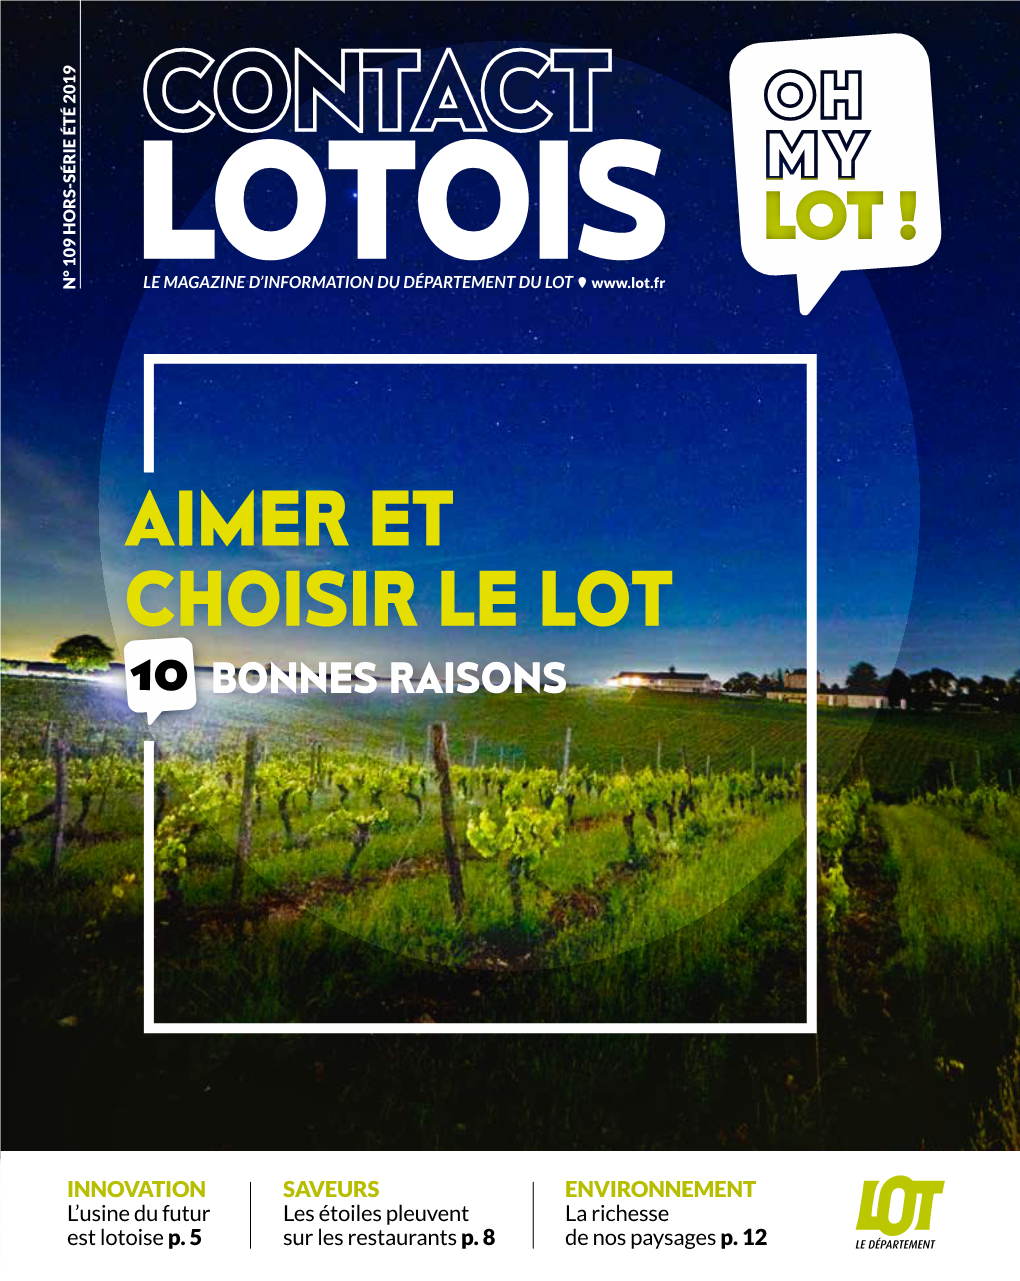 Contact Lotois "Aimer Et Choisir Le Lot"